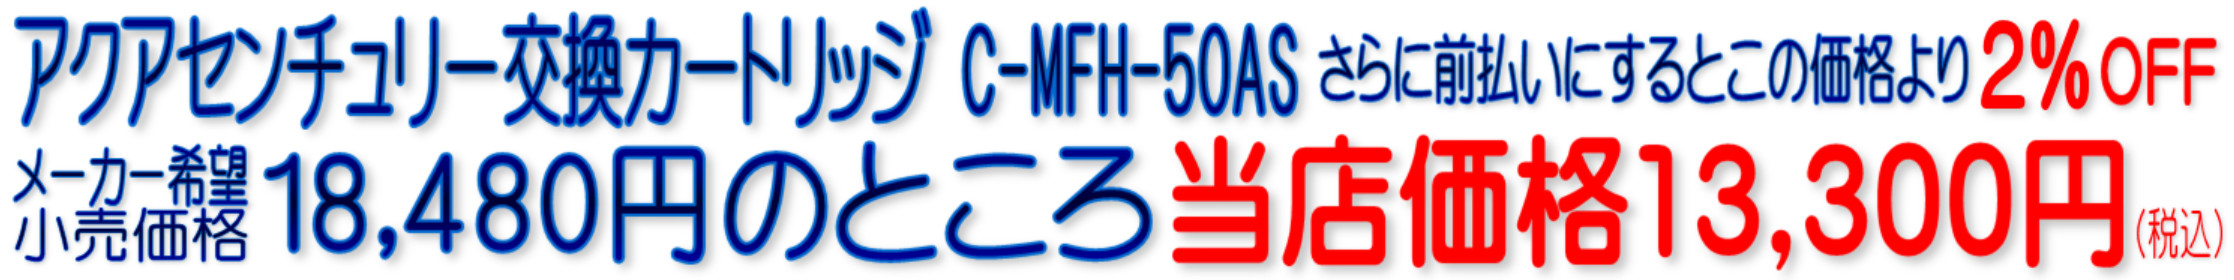 C-MFH-50AS MFH-50AS